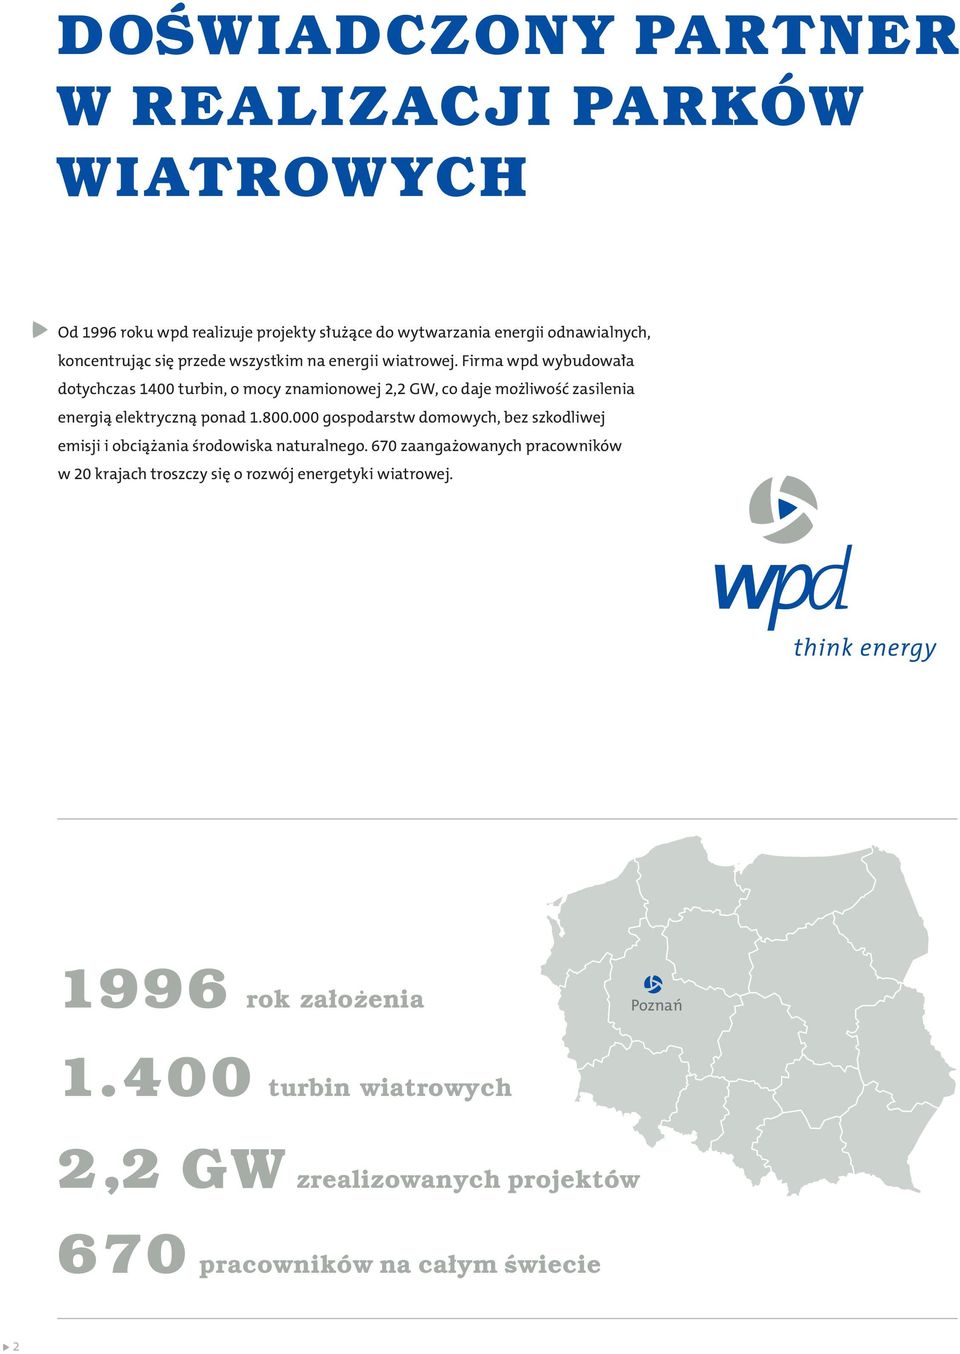 Firma wpd wybudowała dotychczas 1400 turbin, o mocy znamionowej 2,2 GW, co daje możliwość zasilenia energią elektryczną ponad 1.800.